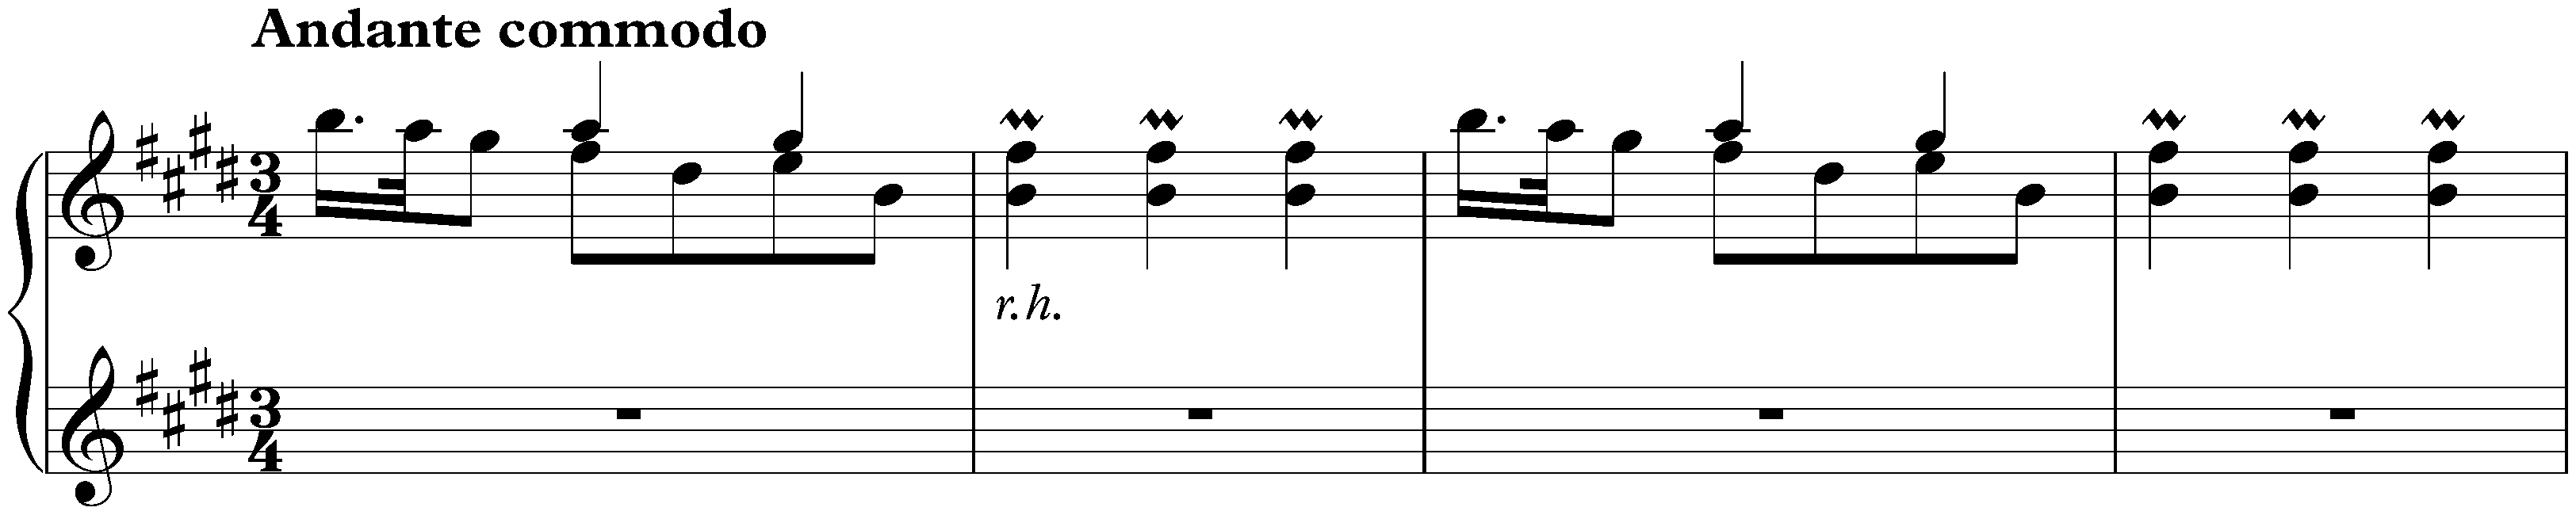 Sonata in E major, K. 380